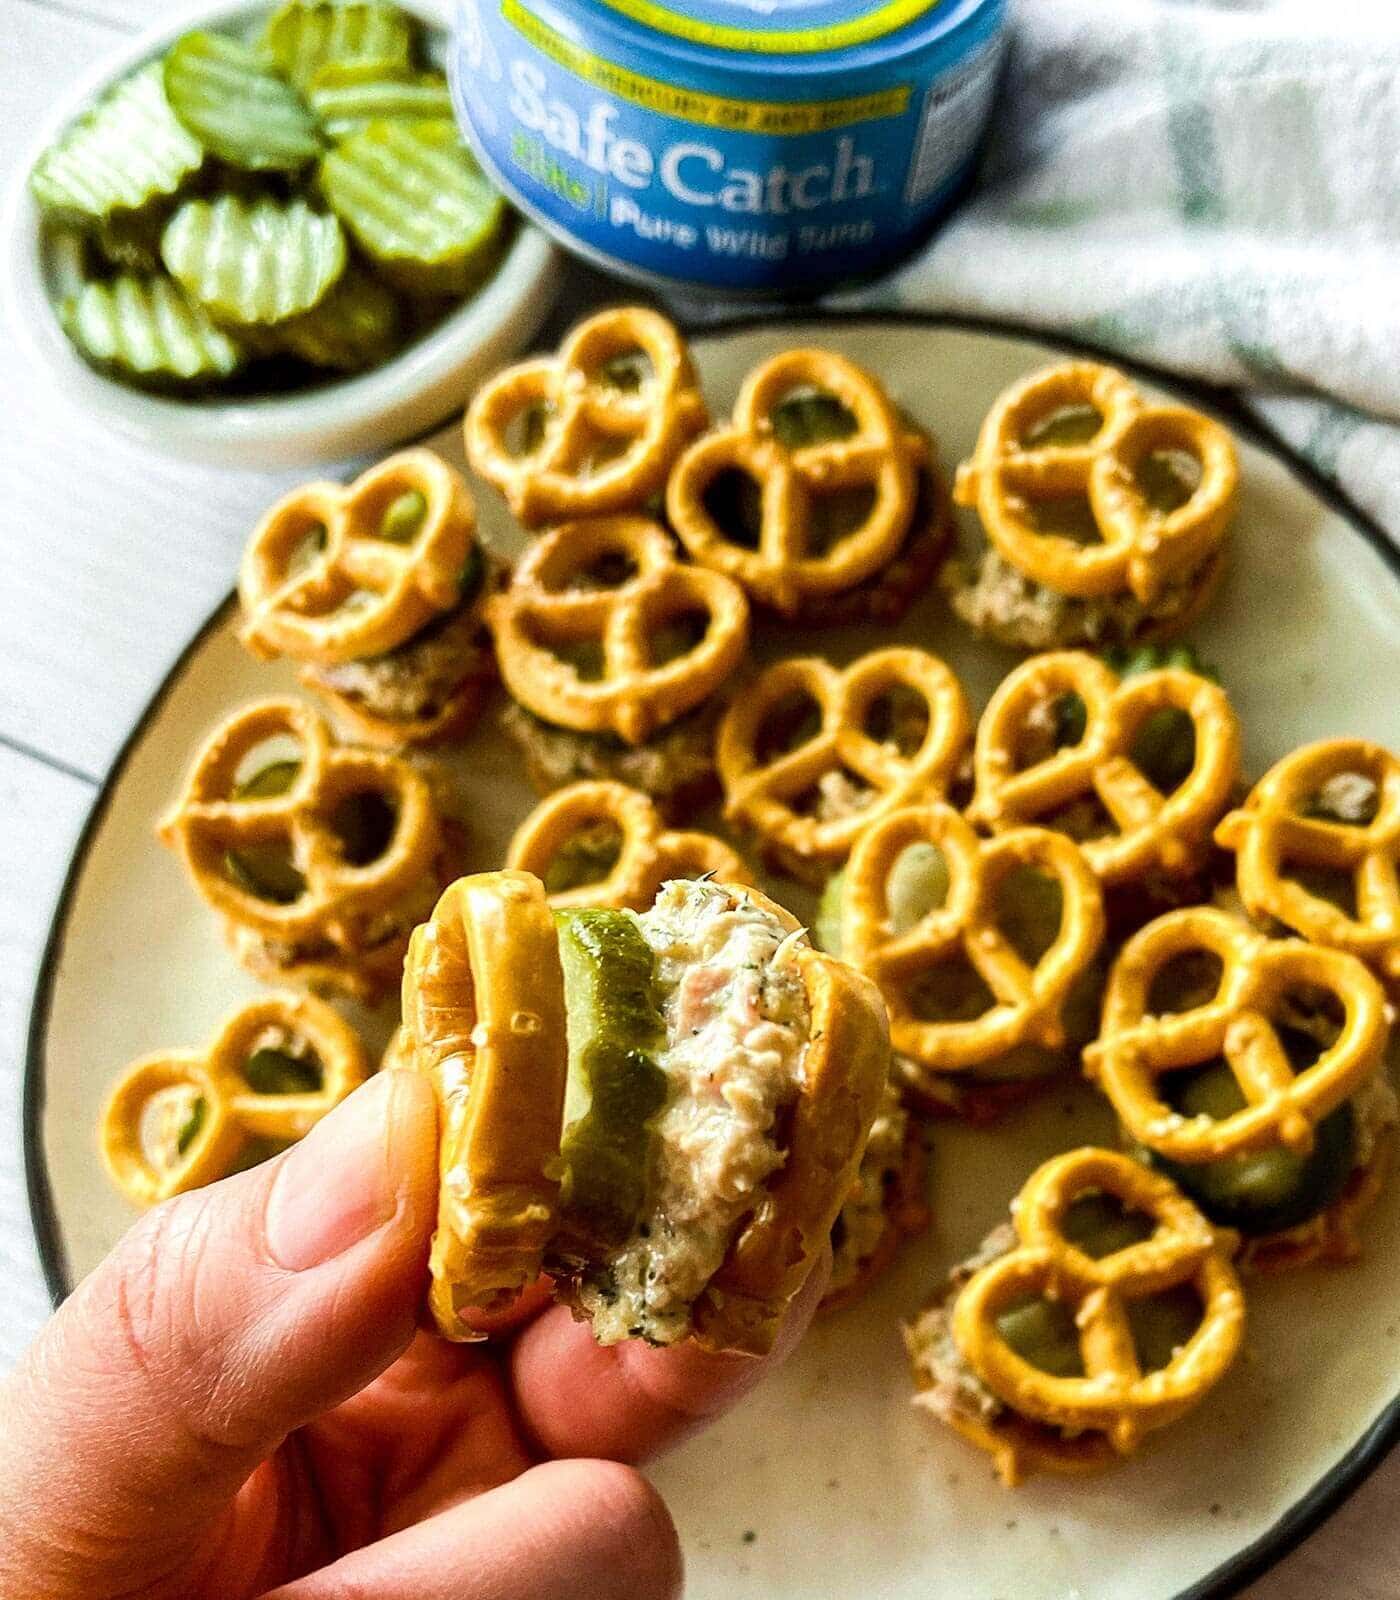 Tuna pickle pretzel sandwiches